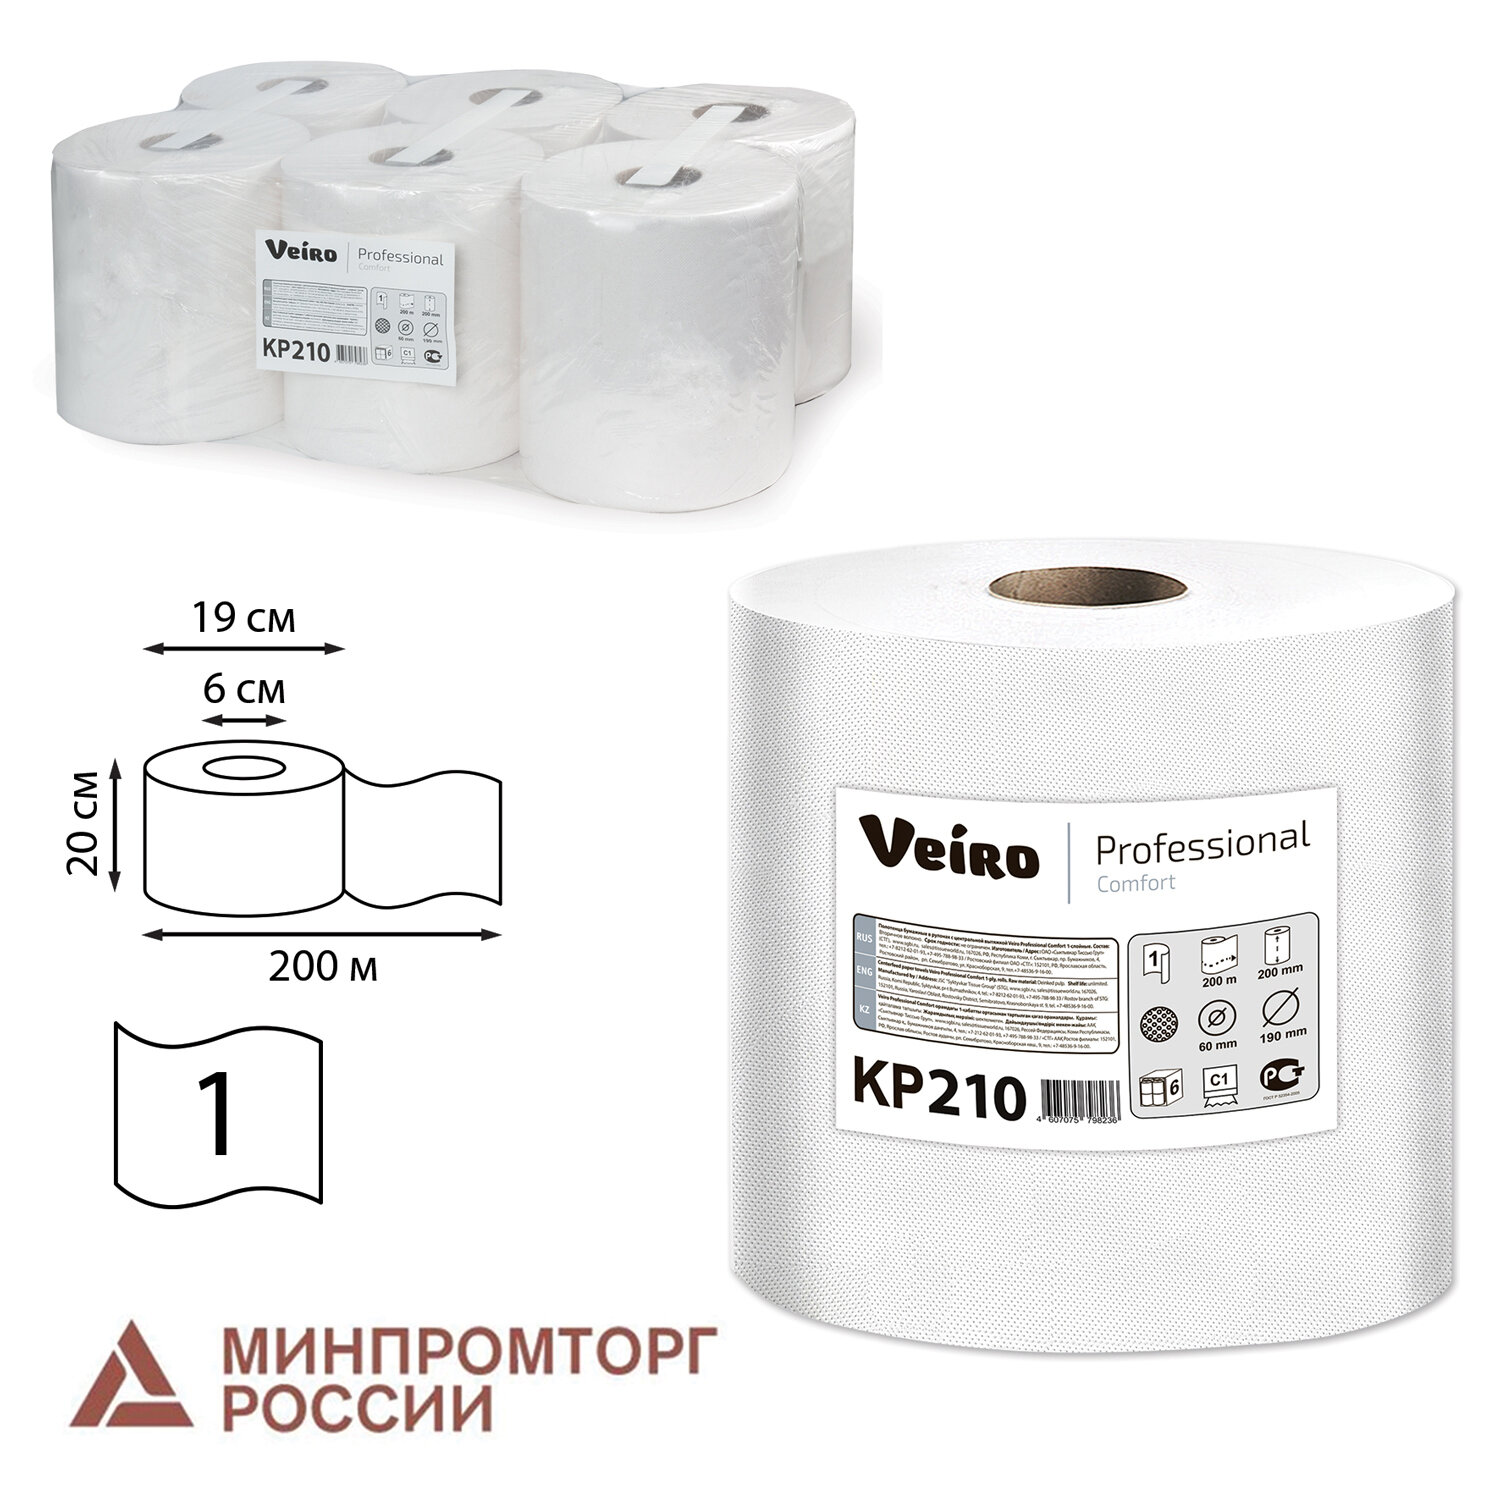 Полотенца бумажные Veiro Comfort, слоев: 1, длина 180 м, натуральный, 6 шт. (КР210)